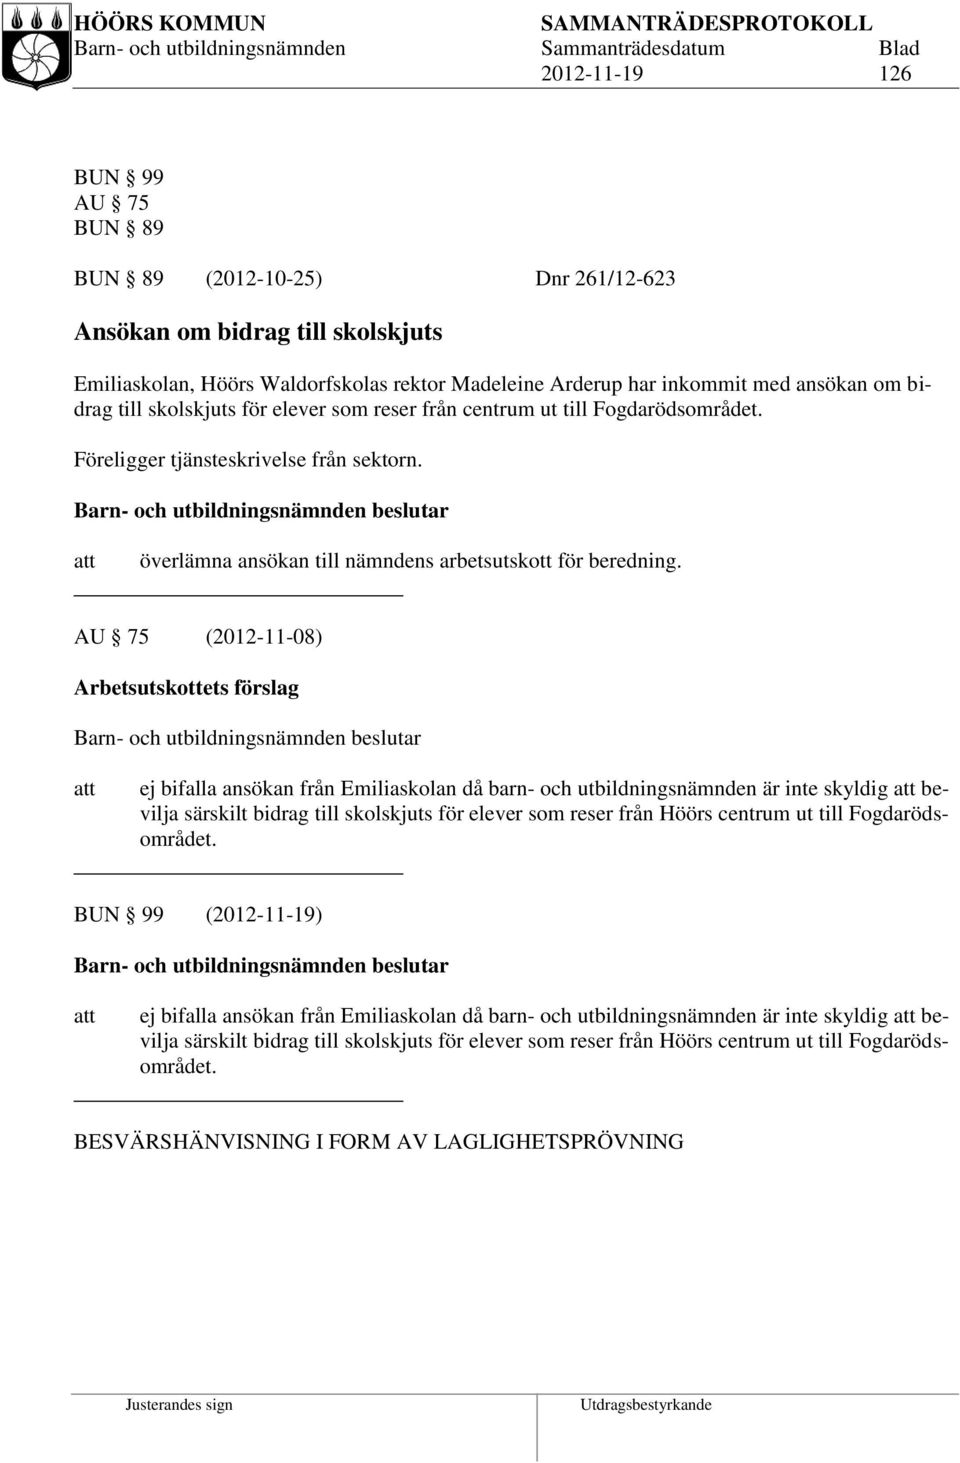 AU 75 (2012-11-08) Arbetsutskottets förslag ej bifalla ansökan från Emiliaskolan då barn- och utbildningsnämnden är inte skyldig bevilja särskilt bidrag till skolskjuts för elever som reser från